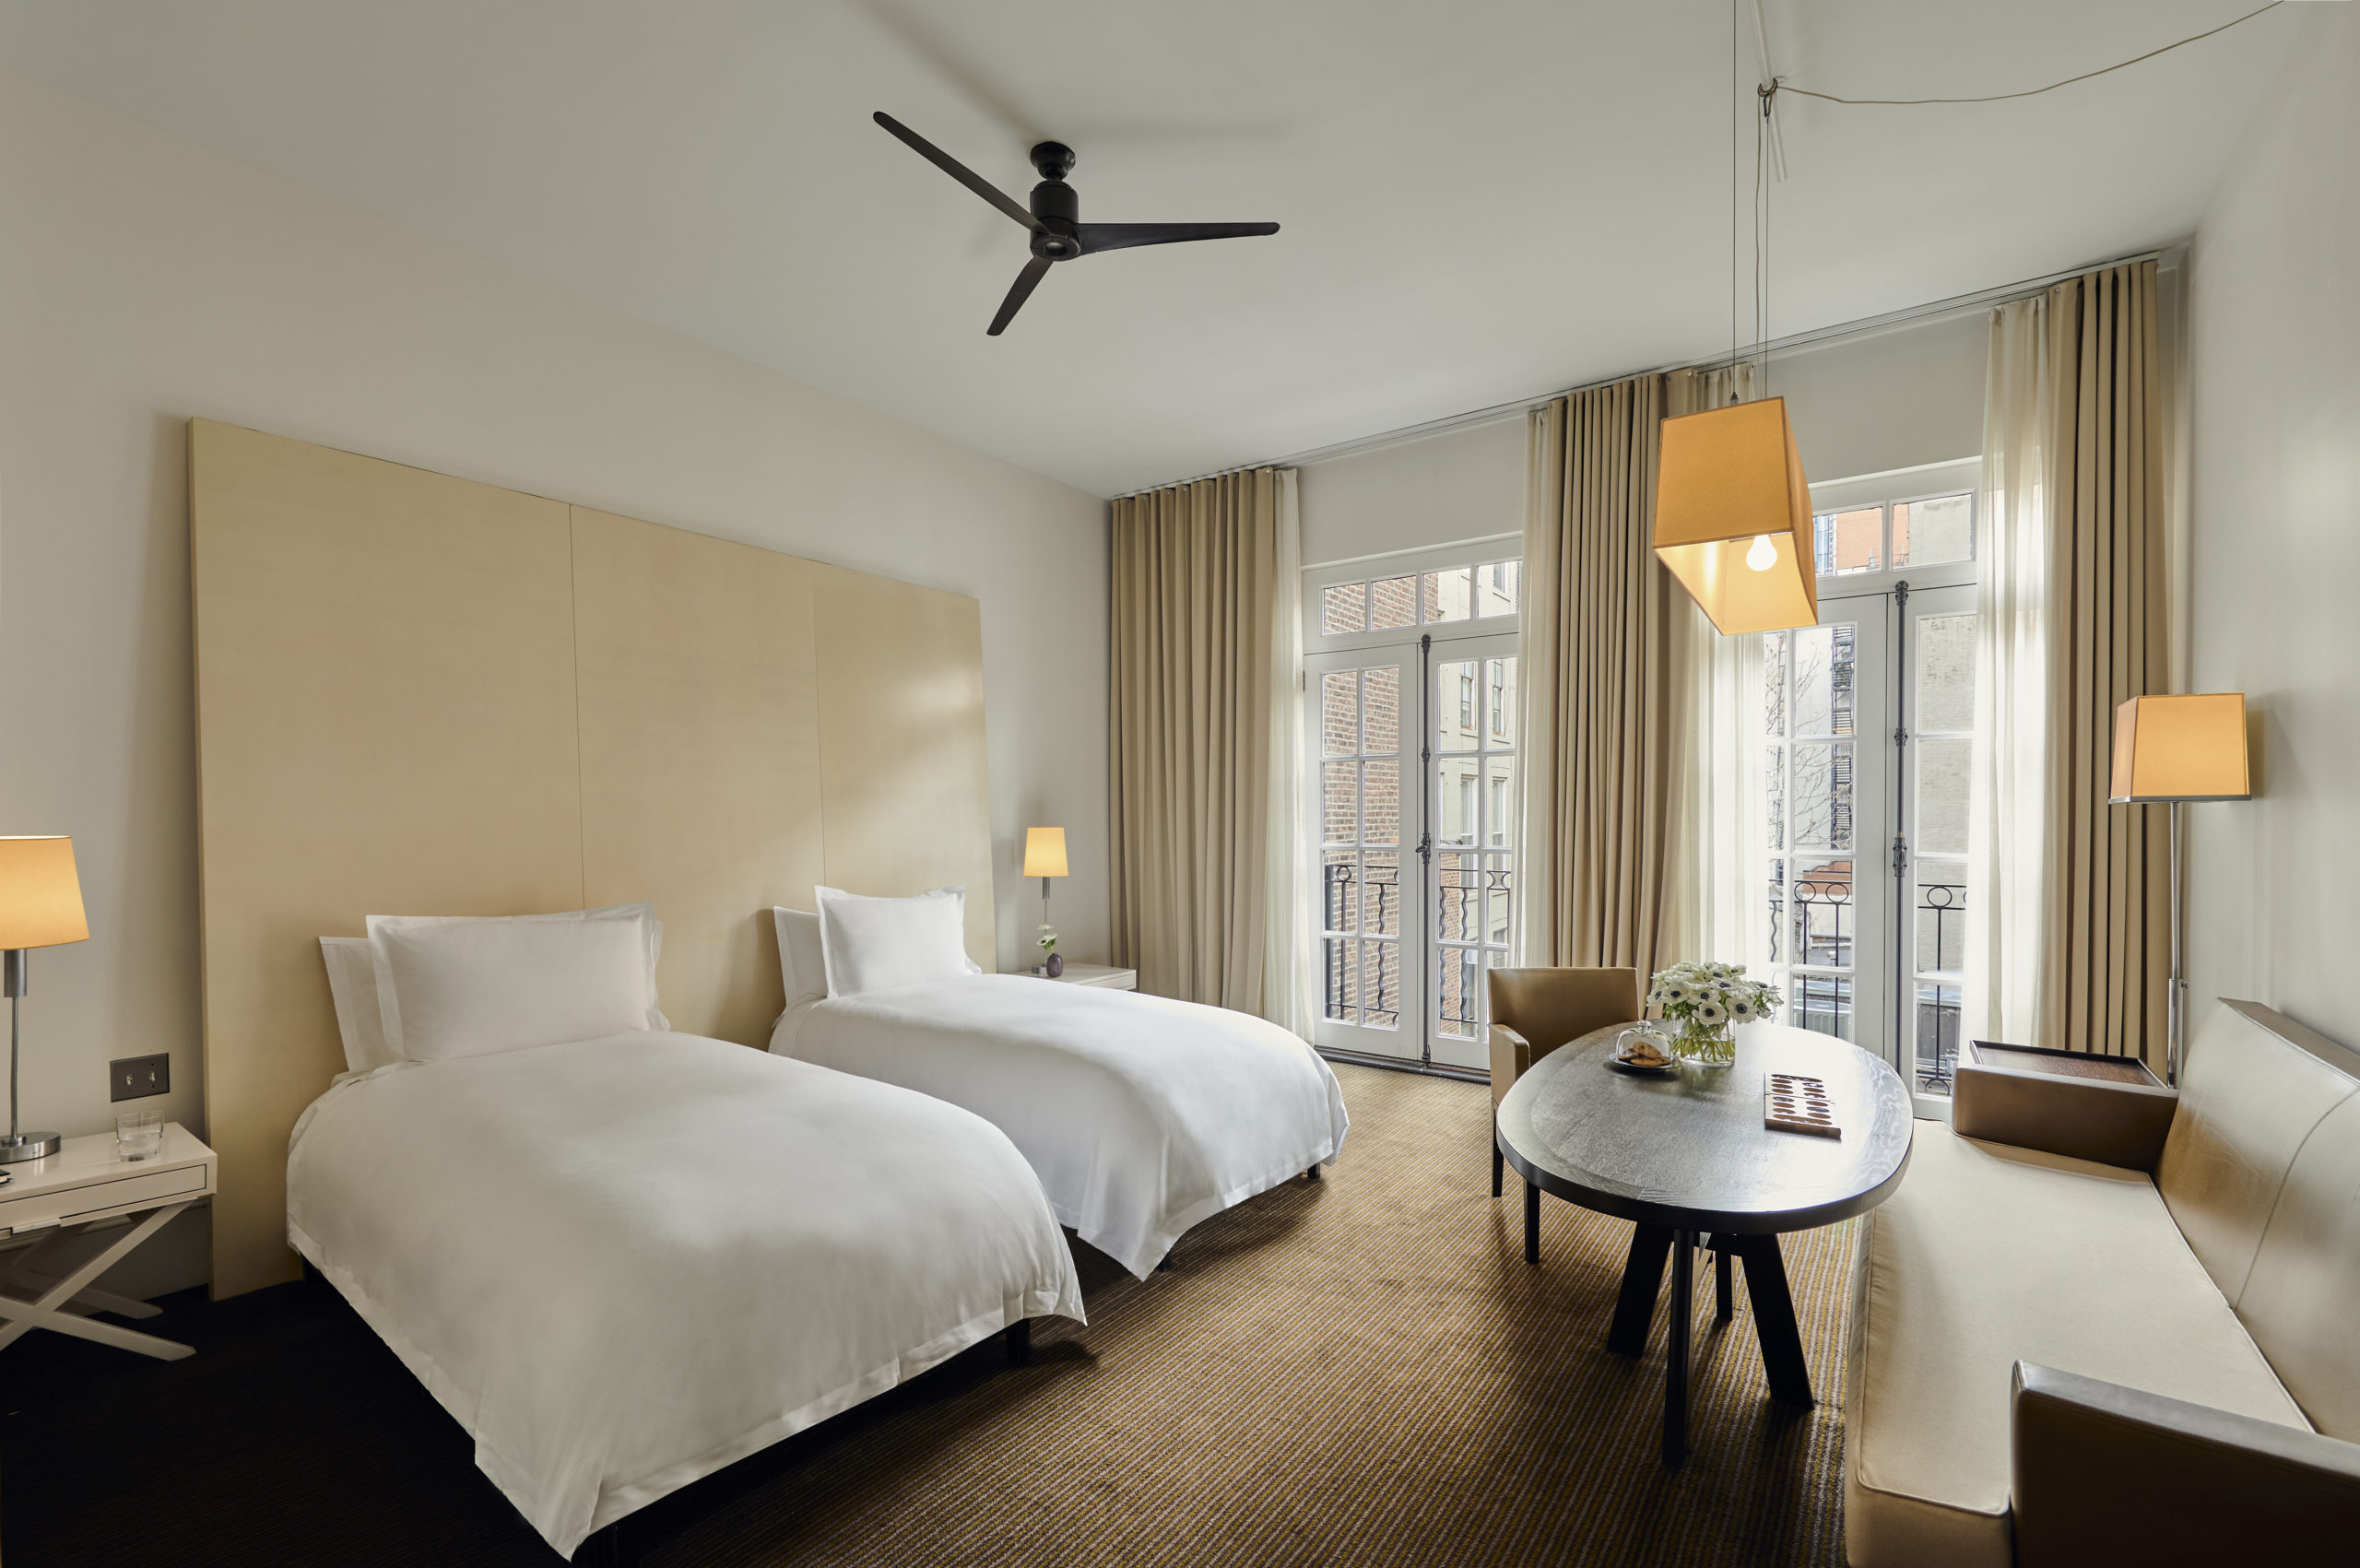 Mercer Hotel | 2 bedroom deluxe & loft studio connecting